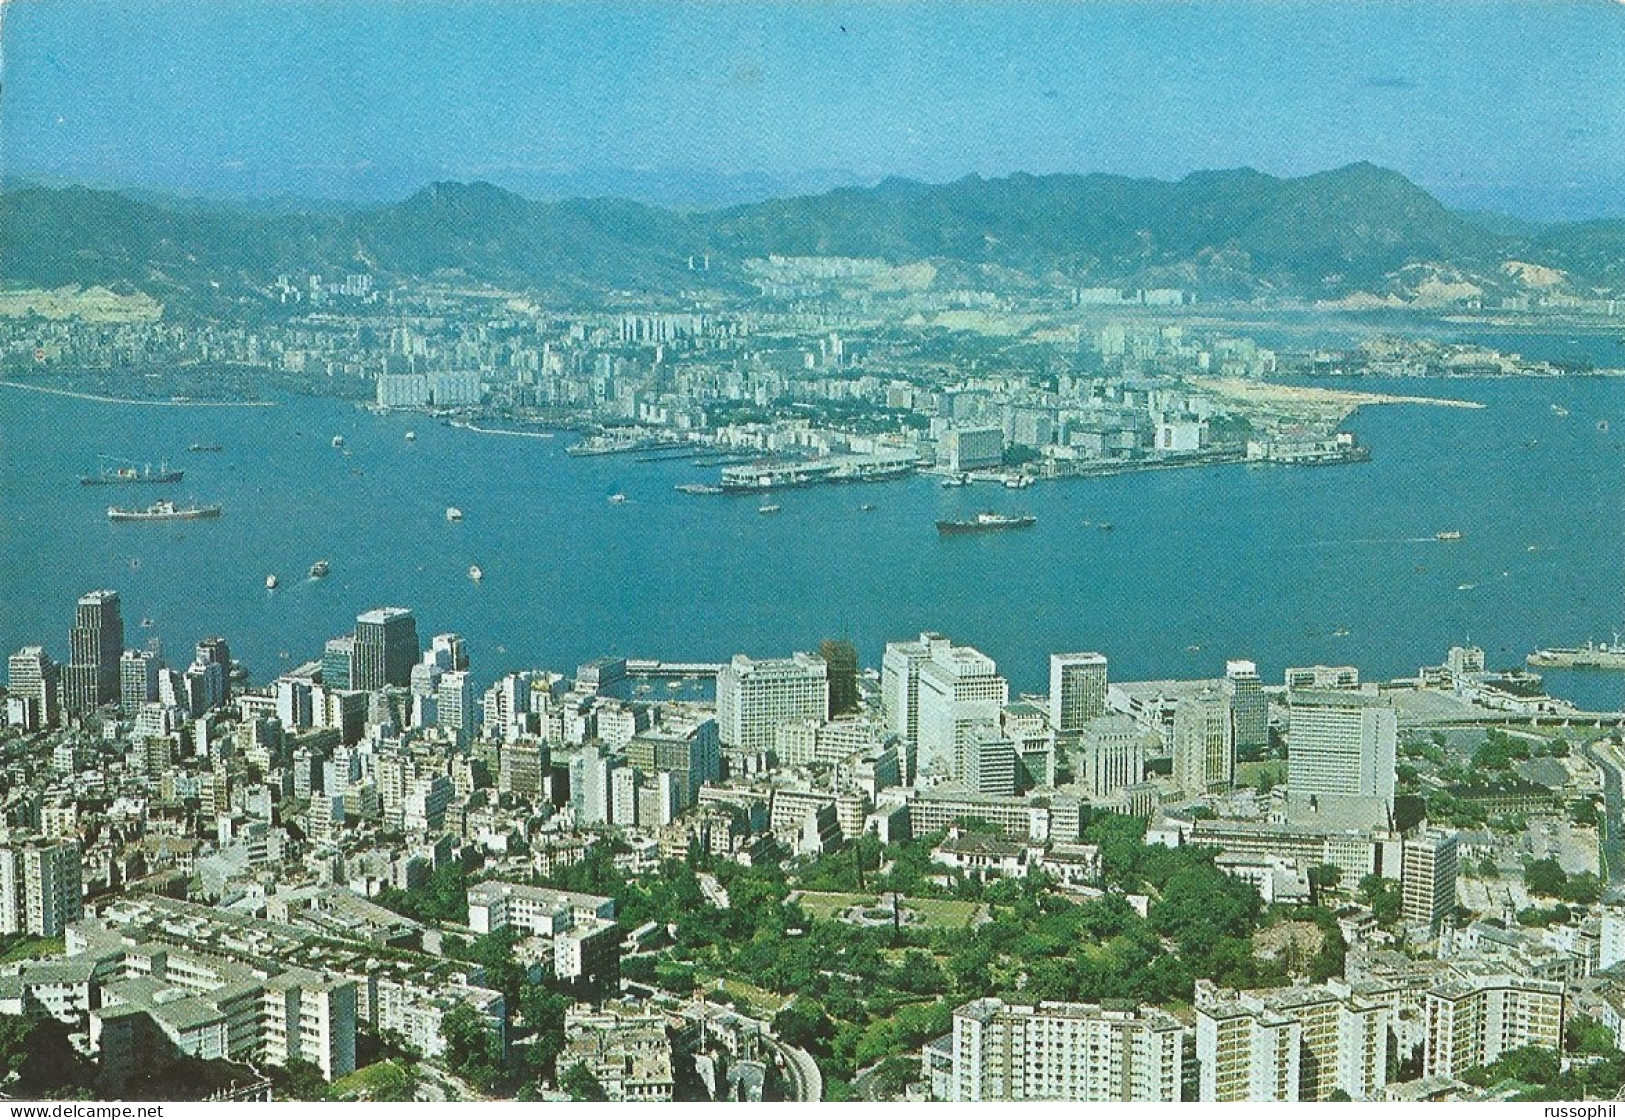 CHINA - HONG KONG - HONG KONG WITH A VIEW OF THE BOTANICAL GARDEN IN THE FOREGROUND - ED. SHECK WA TONG - 1968 - Cina (Hong Kong)